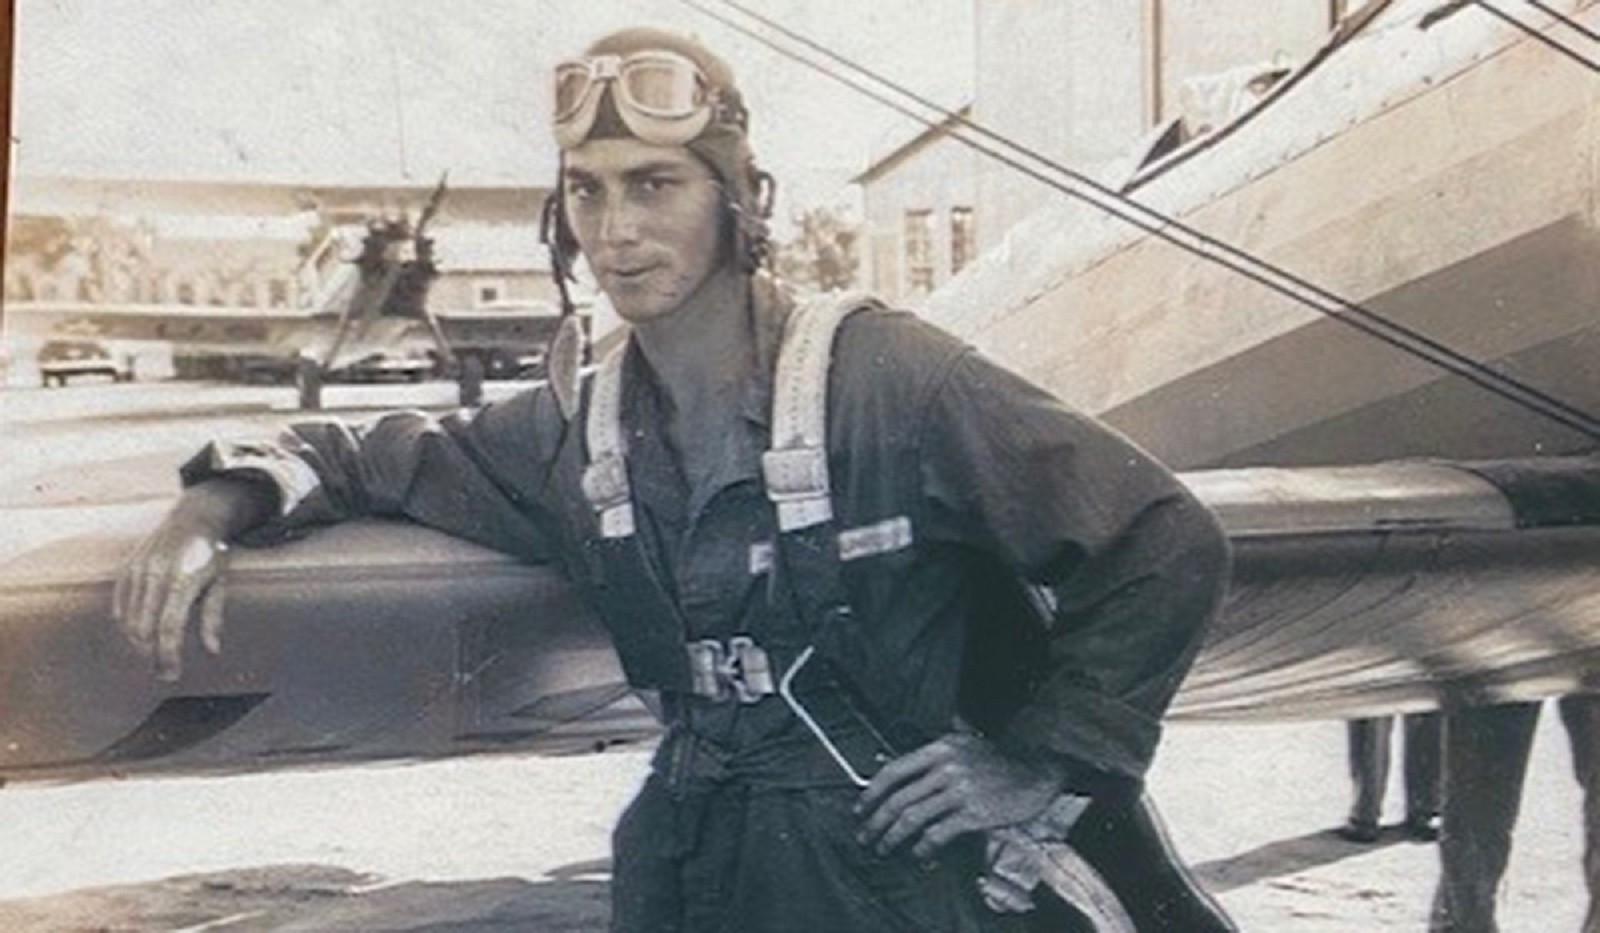 Odnaleziono zaginionego pilota z II wojny światowej. Przełom w sprawie po 80 latach